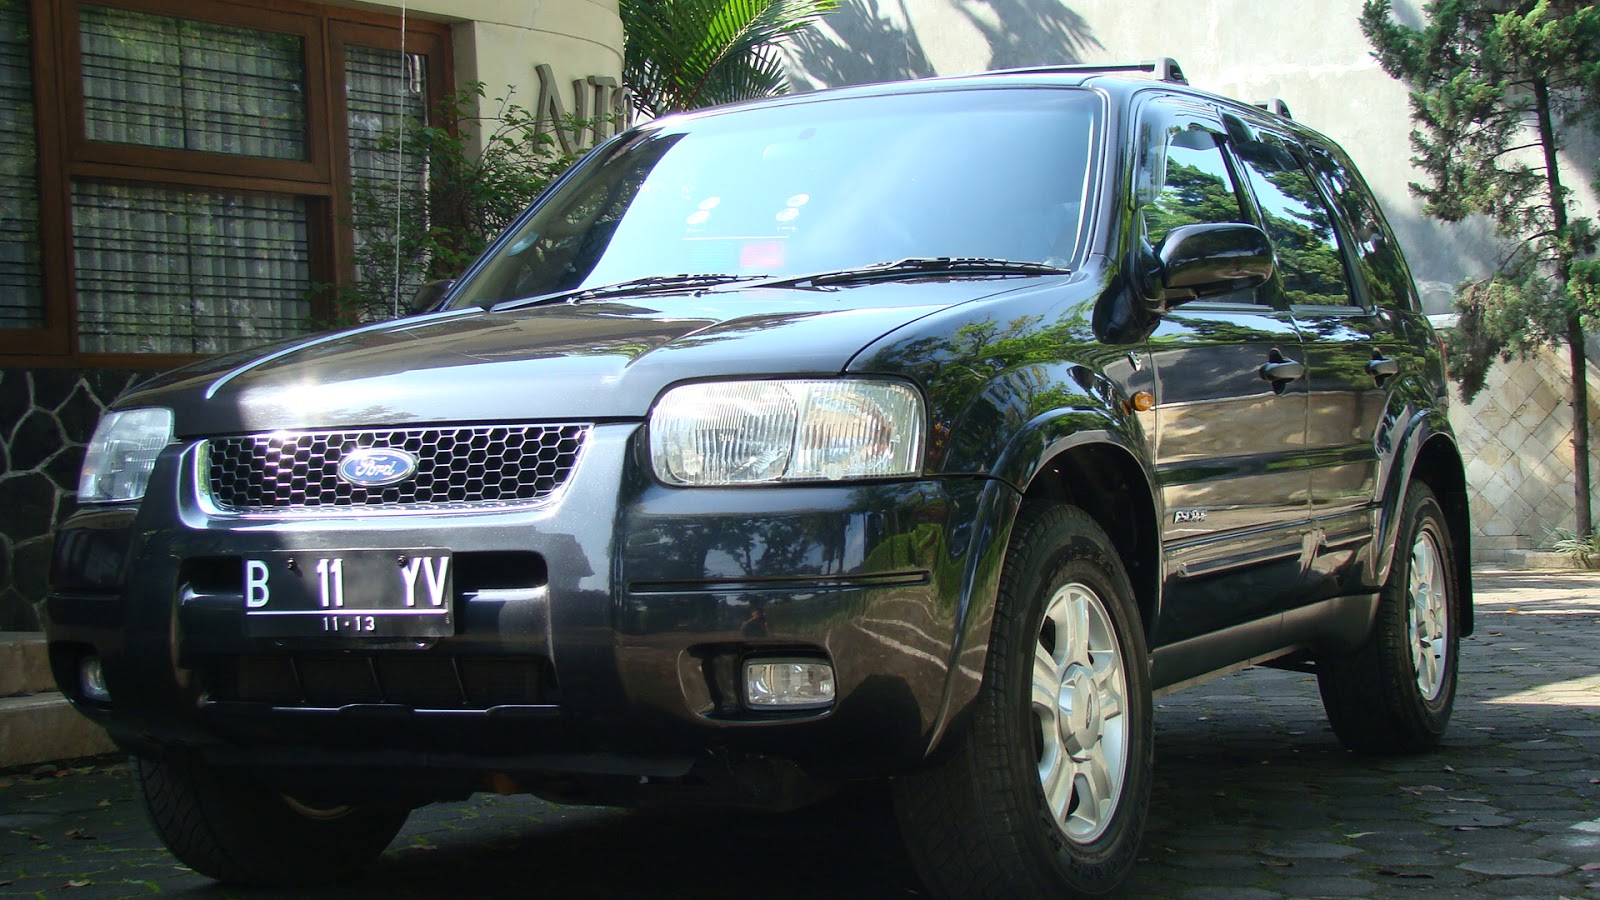  Harga  Mobil  Ford  Baru  Bekas  Terlengkap se Indonesia 